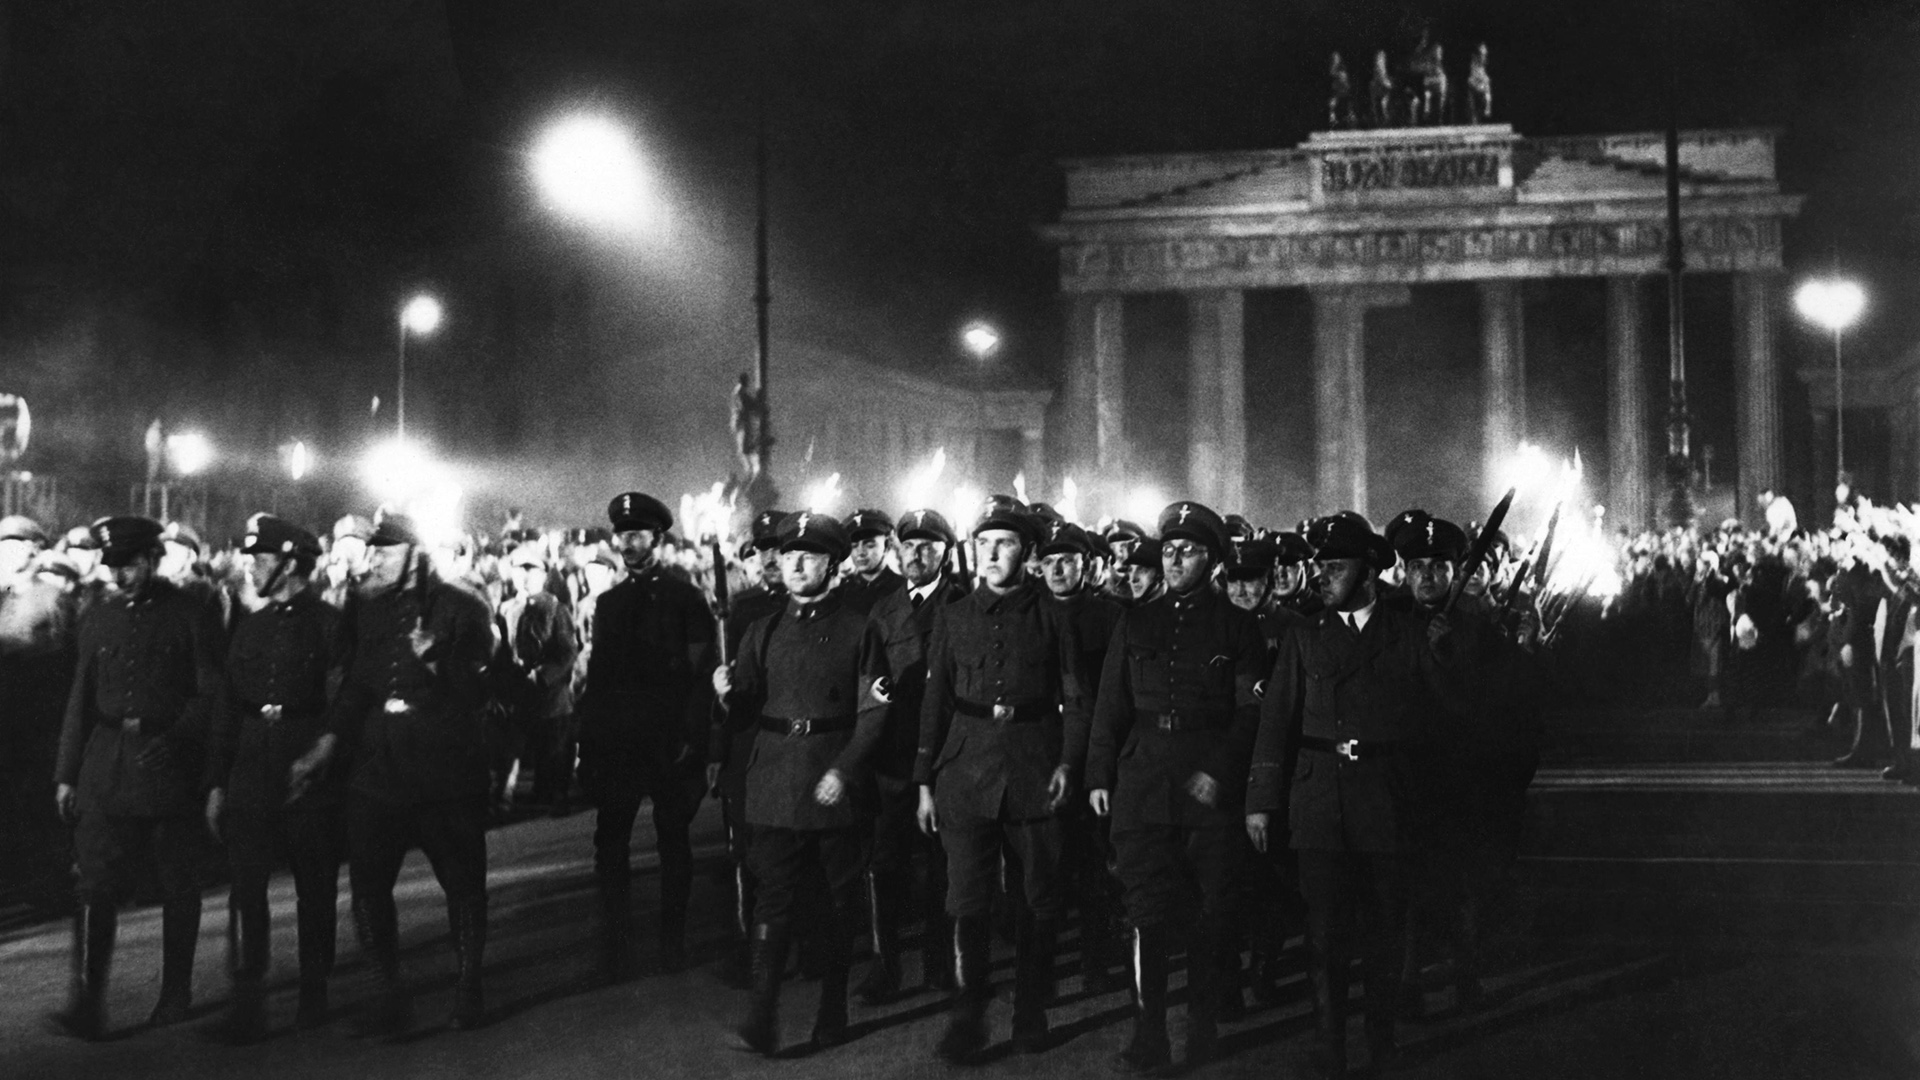 90 Jahre nach Machtergreifung: Wie gefährdet ist die Demokratie?